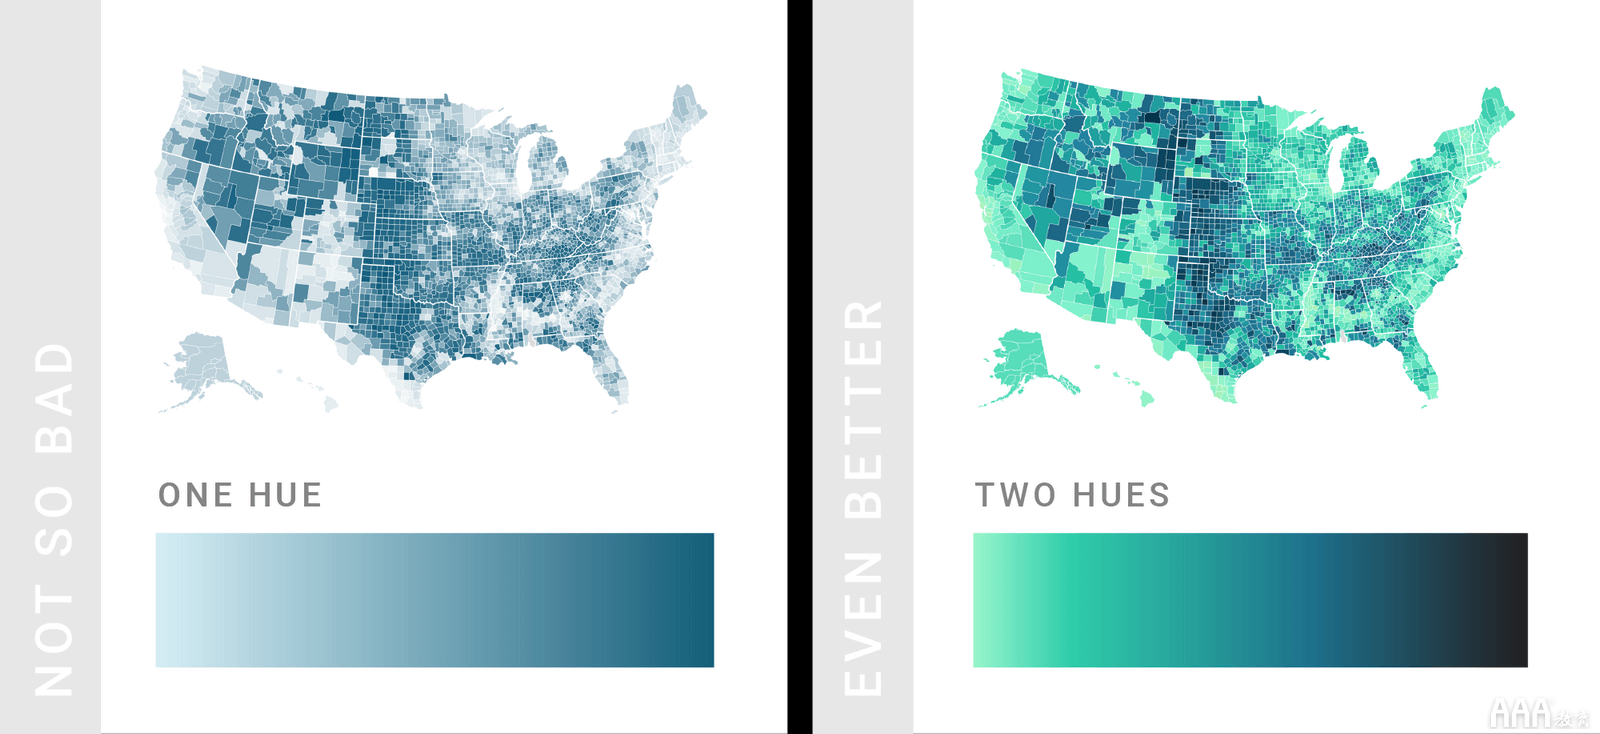 大数据分析中数据可视化颜色使用技巧